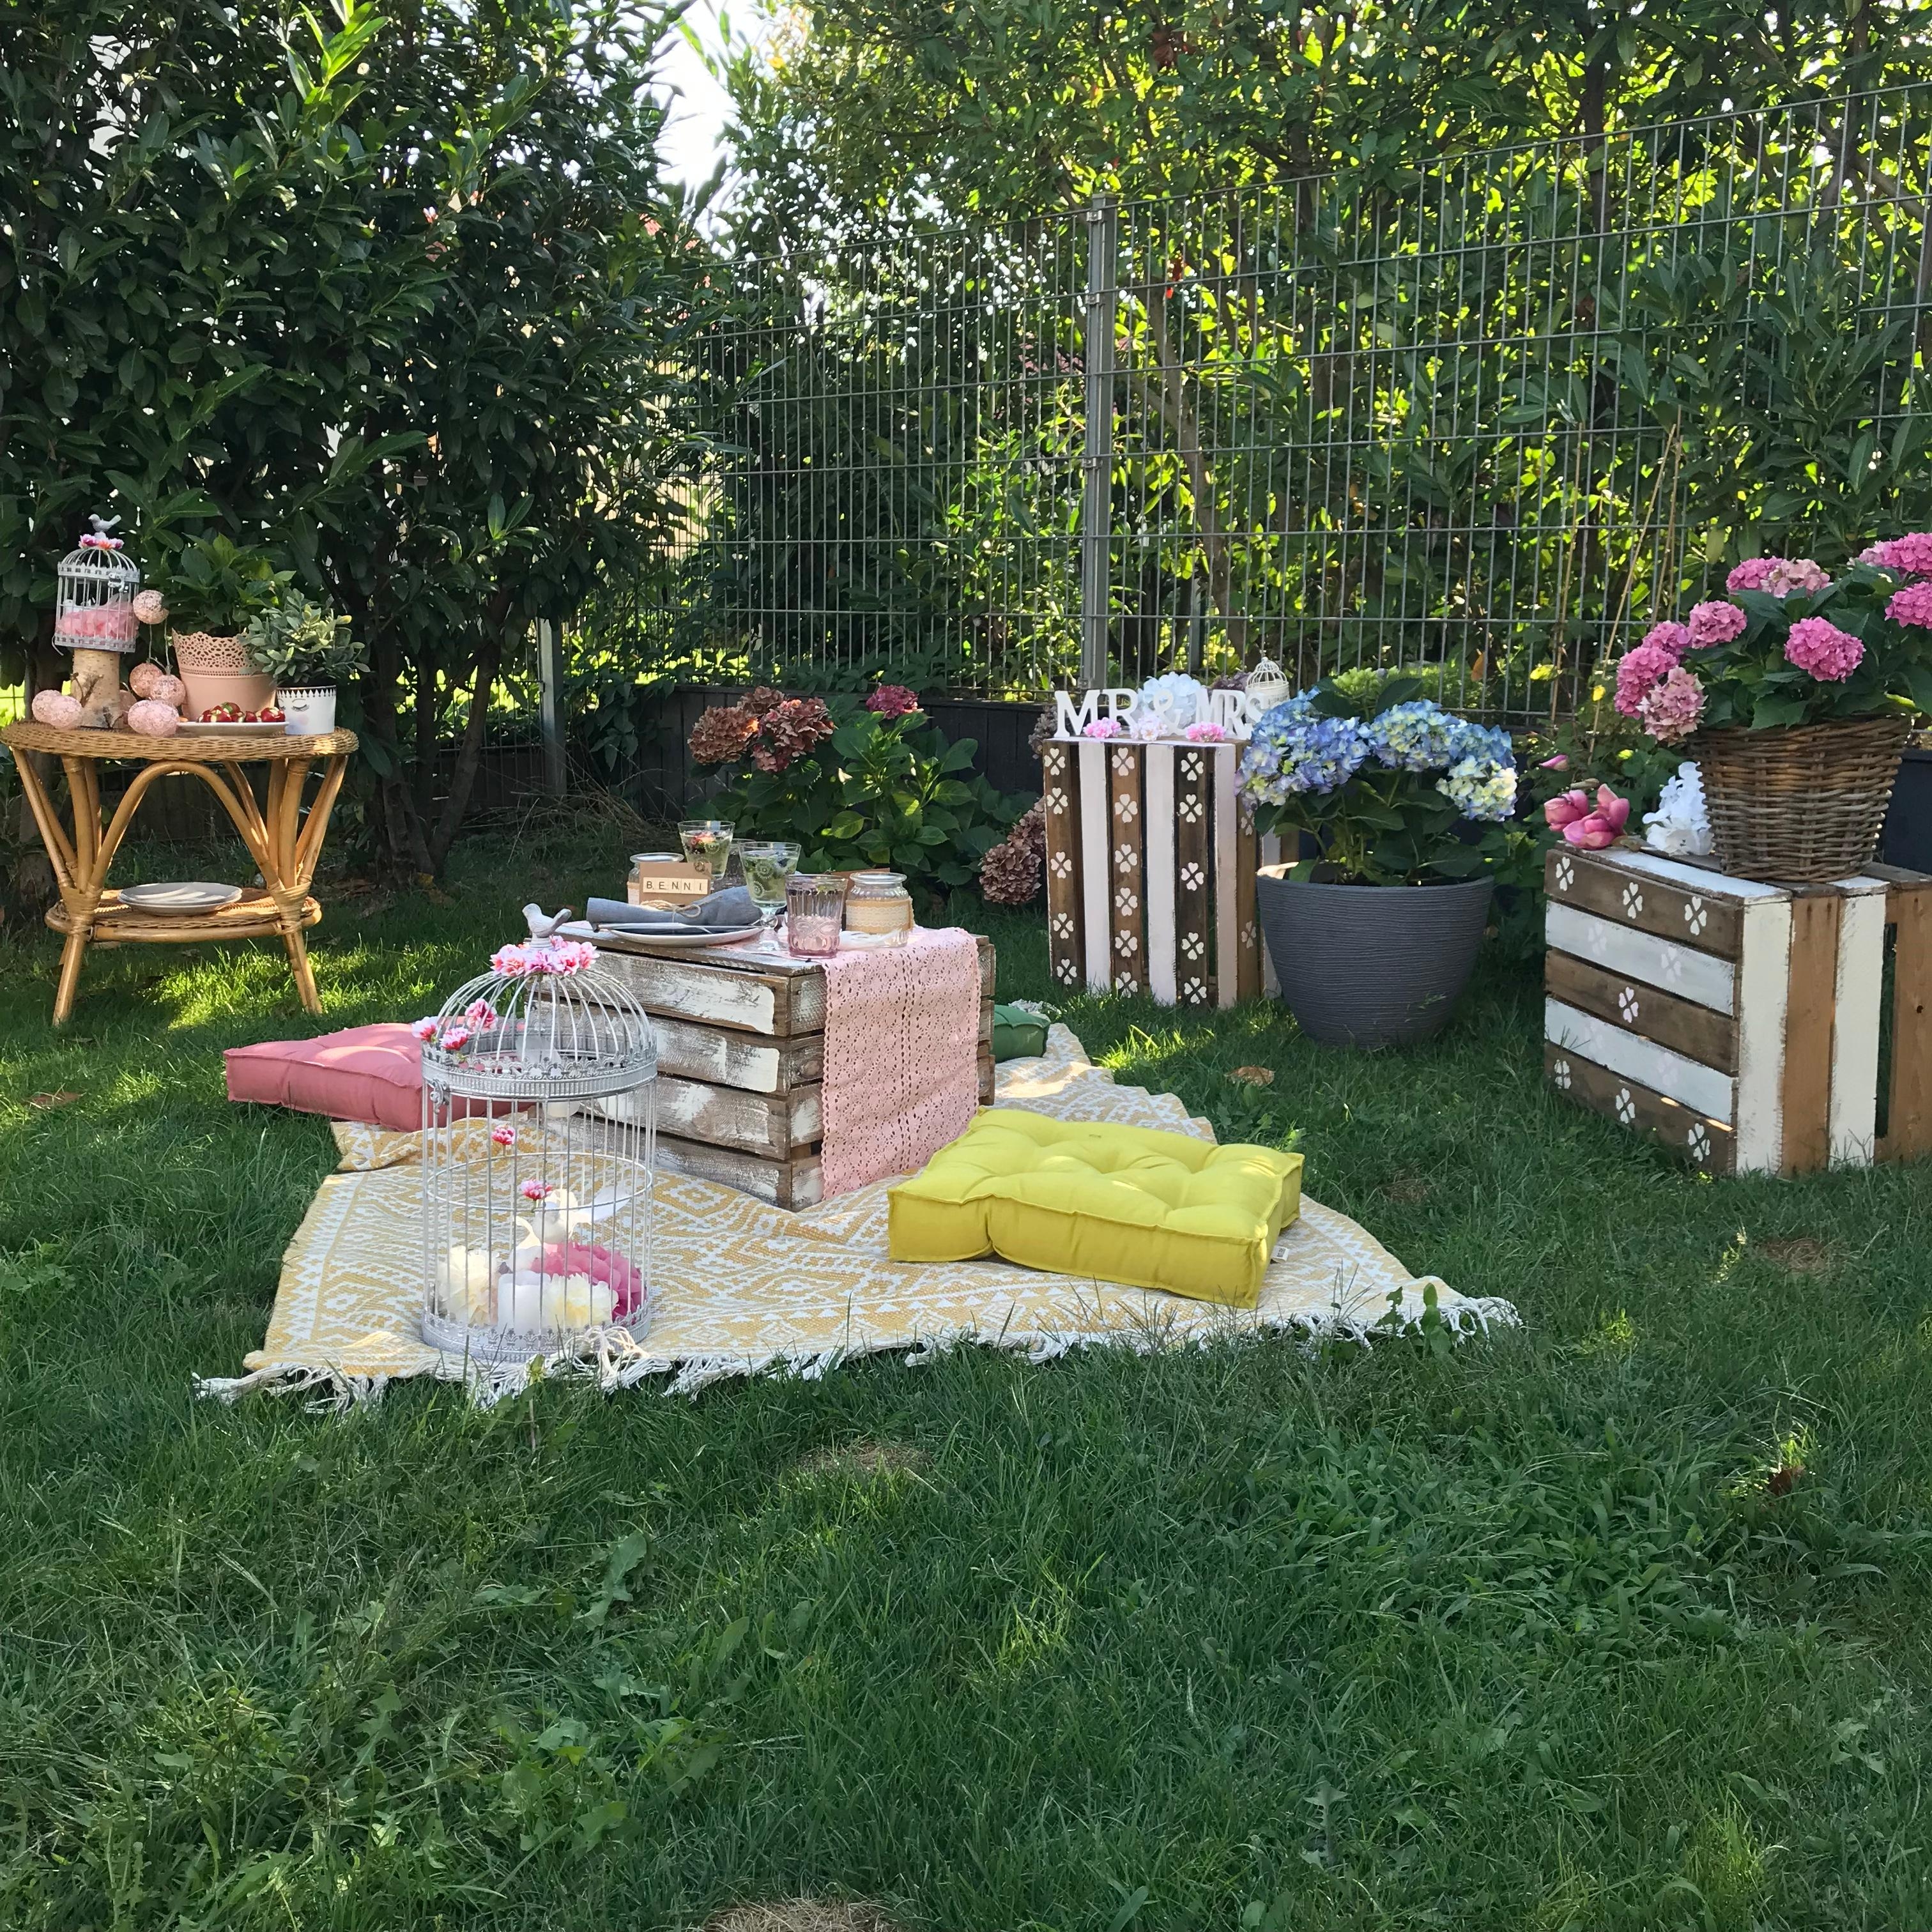 Picknick im Garten #picknick #sommer #garten #hochzeitstag #interior #sommerfest #gartenliebe #outdoor #liebe #hortensie